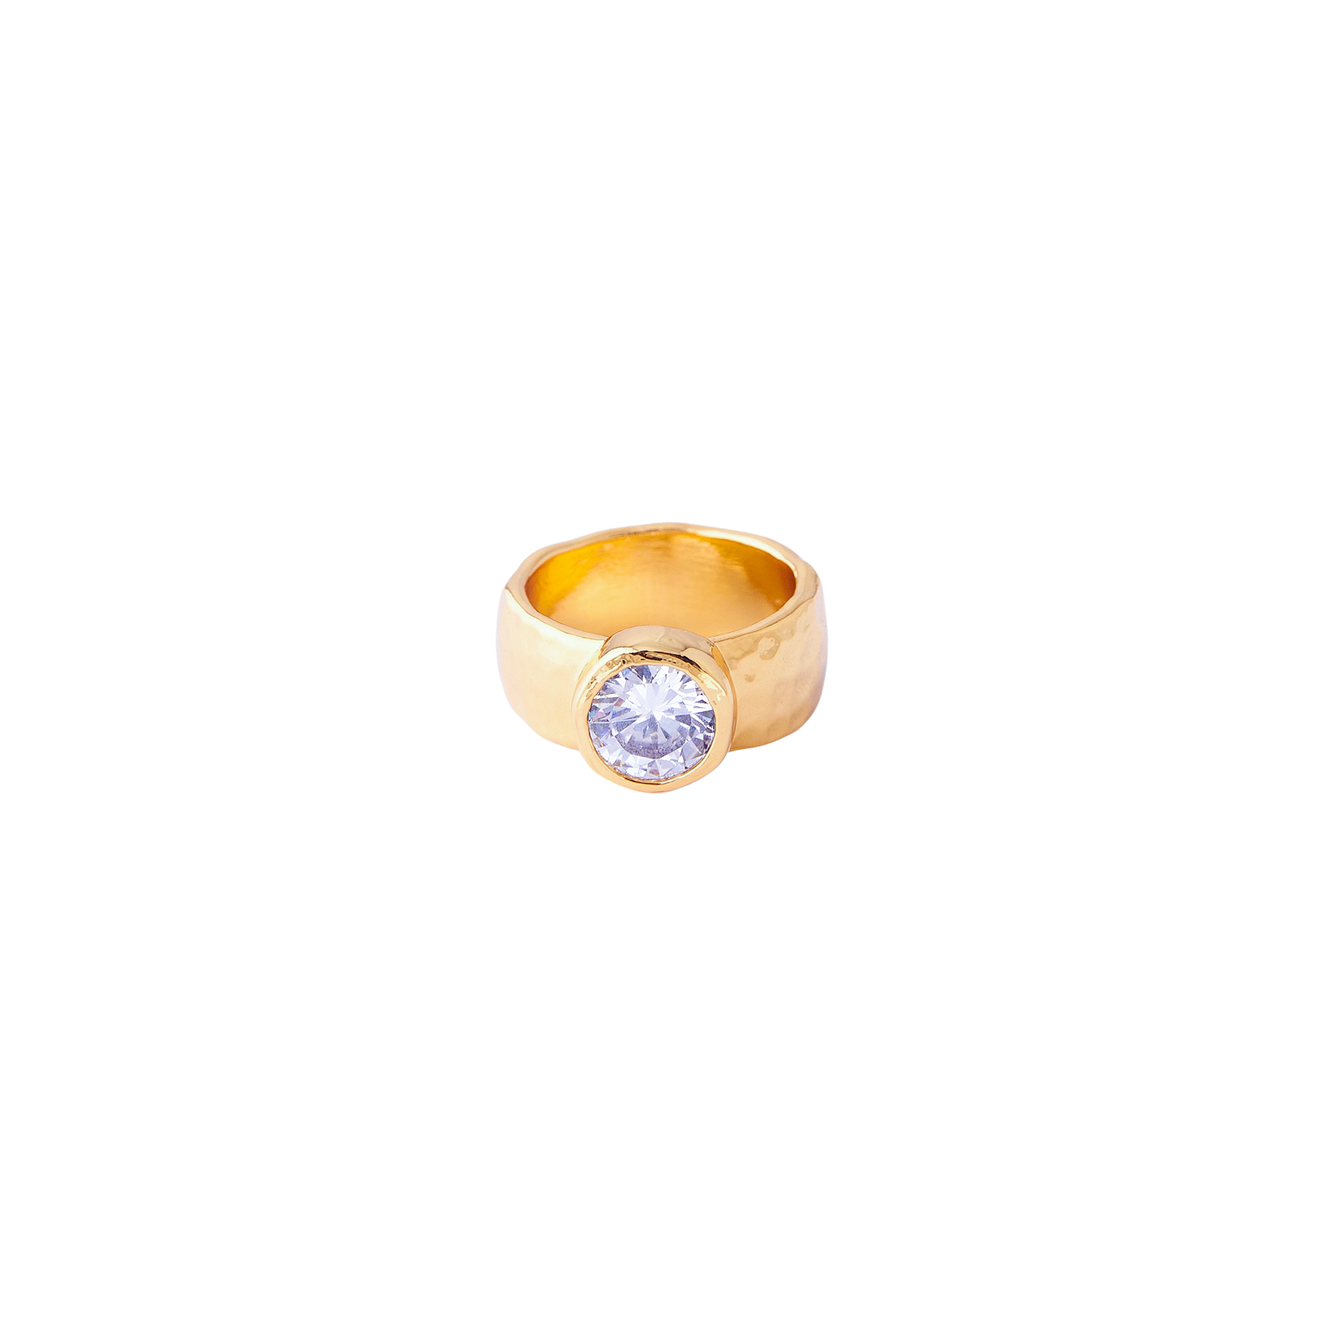 Herald Percy Золотистое кольцо с крупным кристаллом lisa smith золотистое кольцо с розовым кристаллом